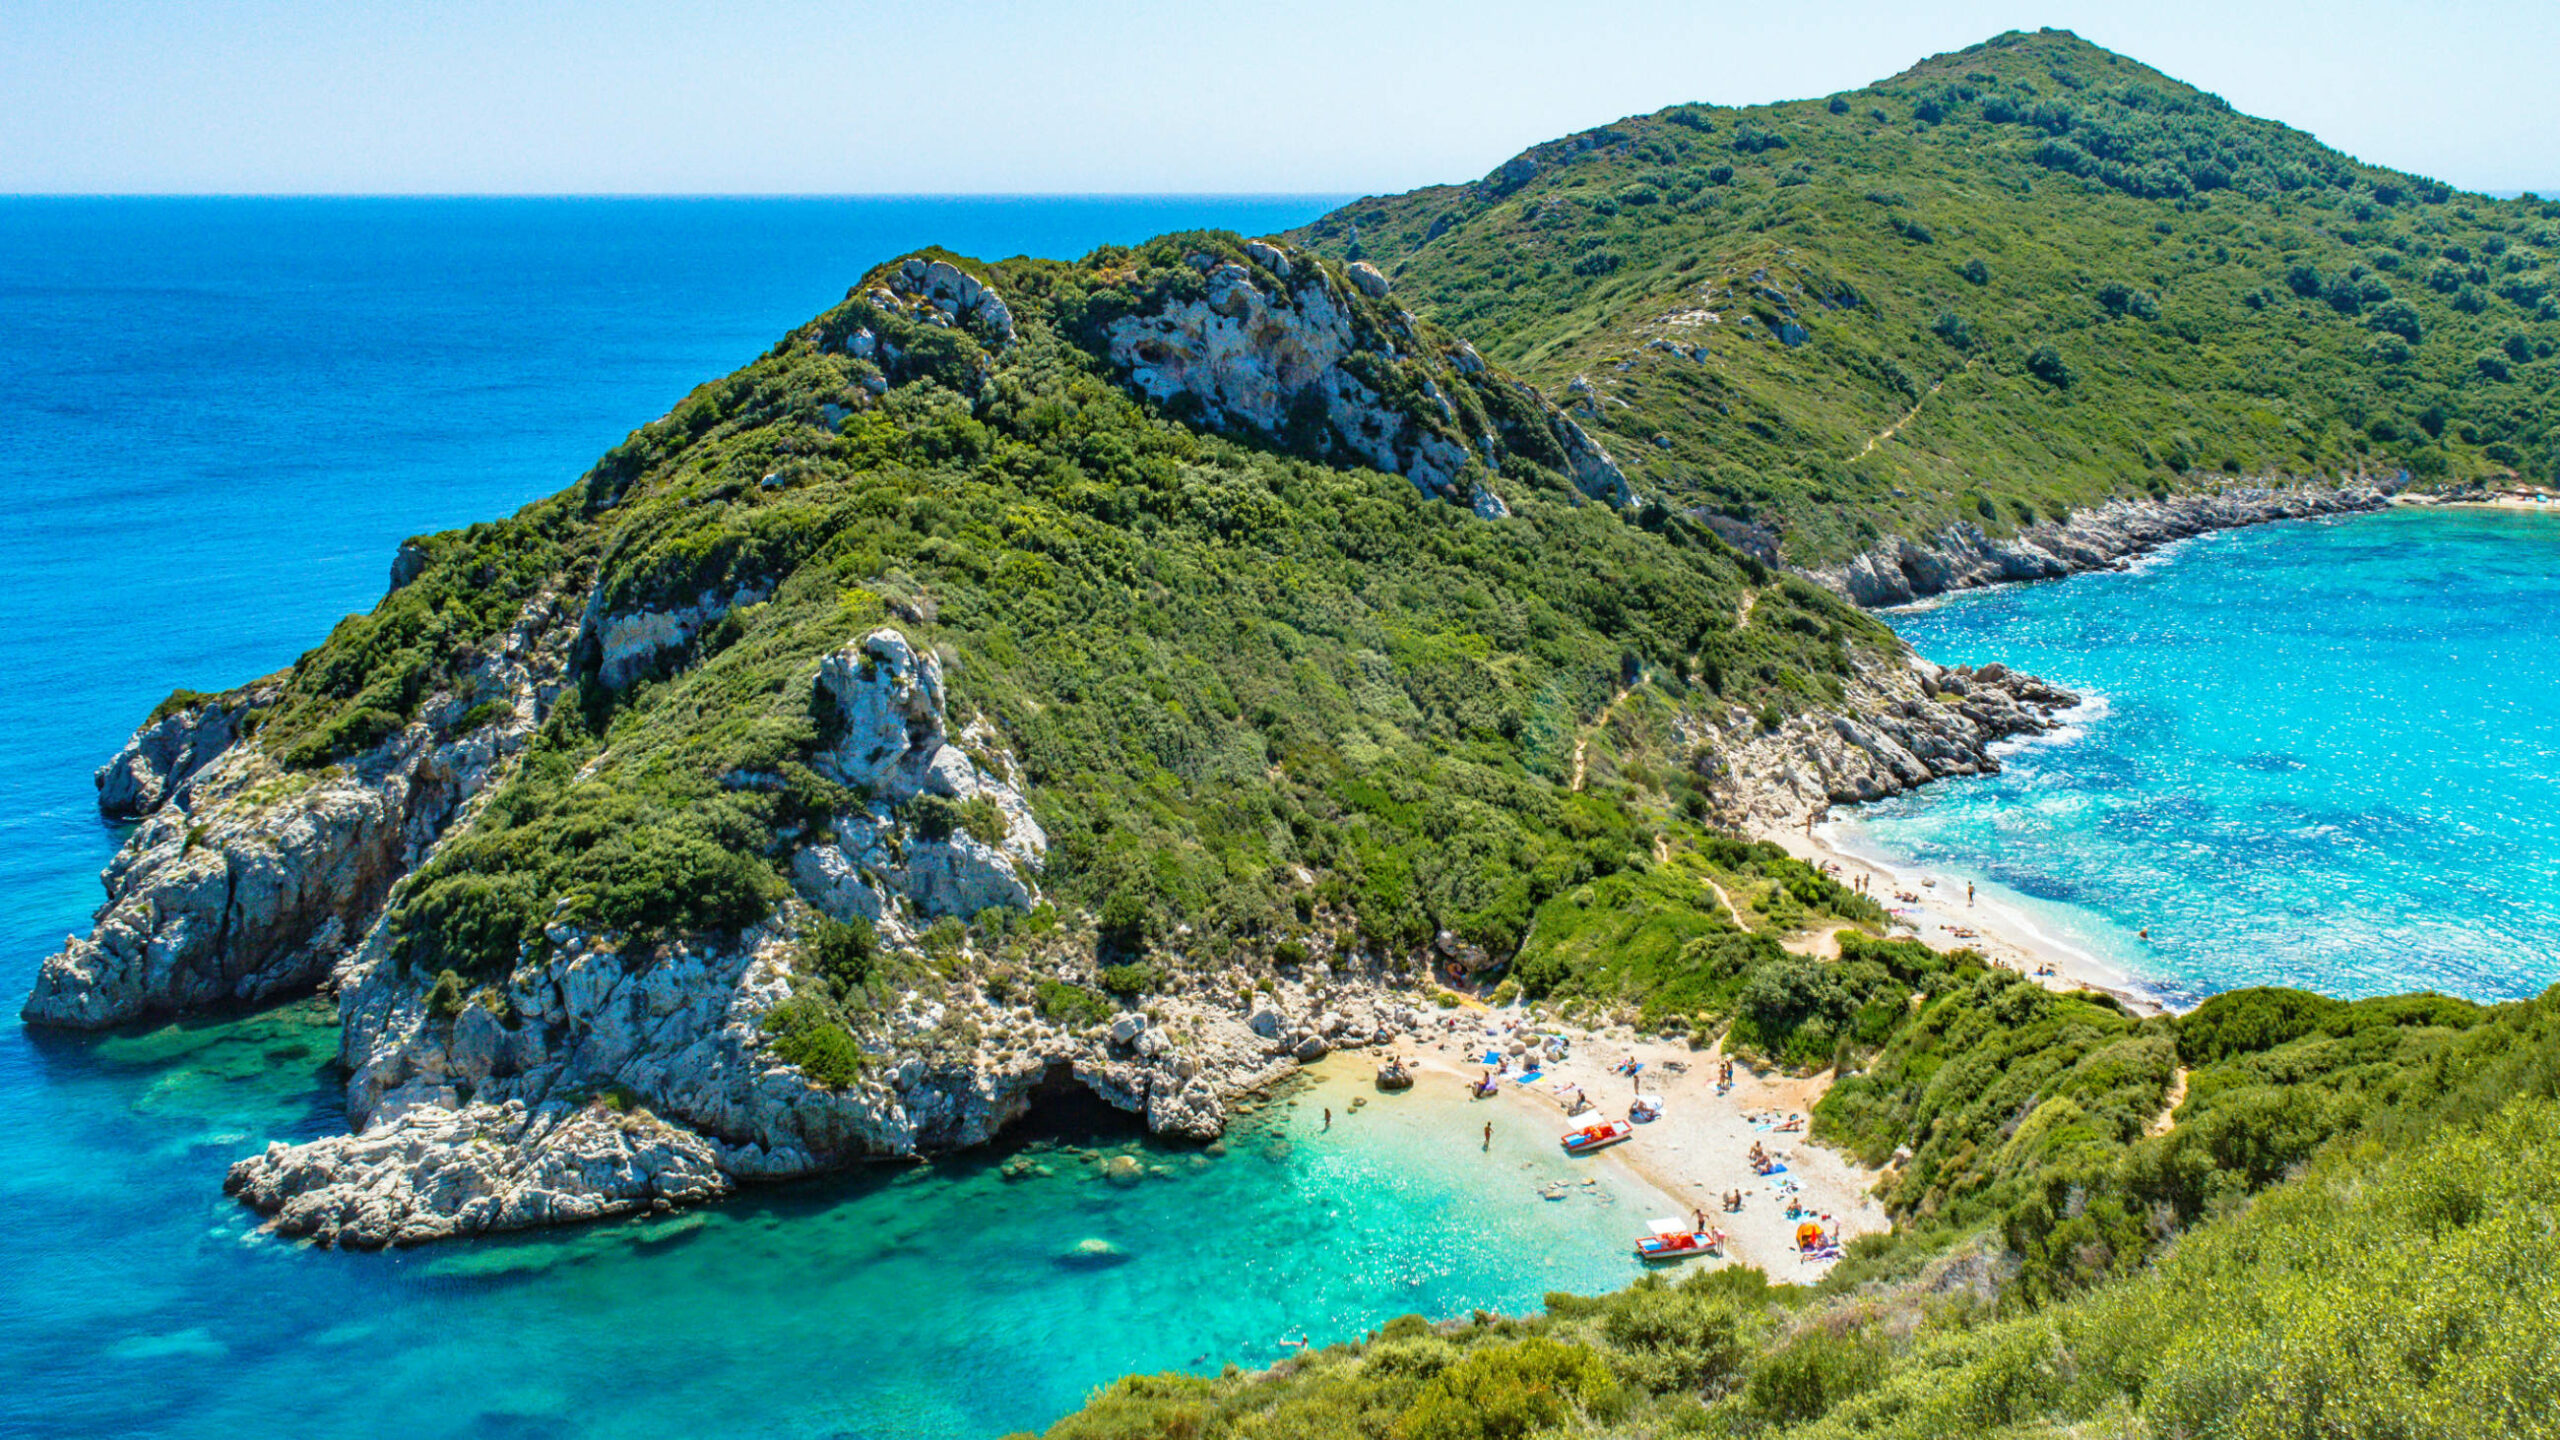 Das Bild zeigt den Zwillingsstrand auf Korfu. Mittig im Bild ist eine grüne Bergkette. An einem verengtem Abschnitt befinden sich links und rechts neben der Grünfläche Strände mit Menschen und Booten.